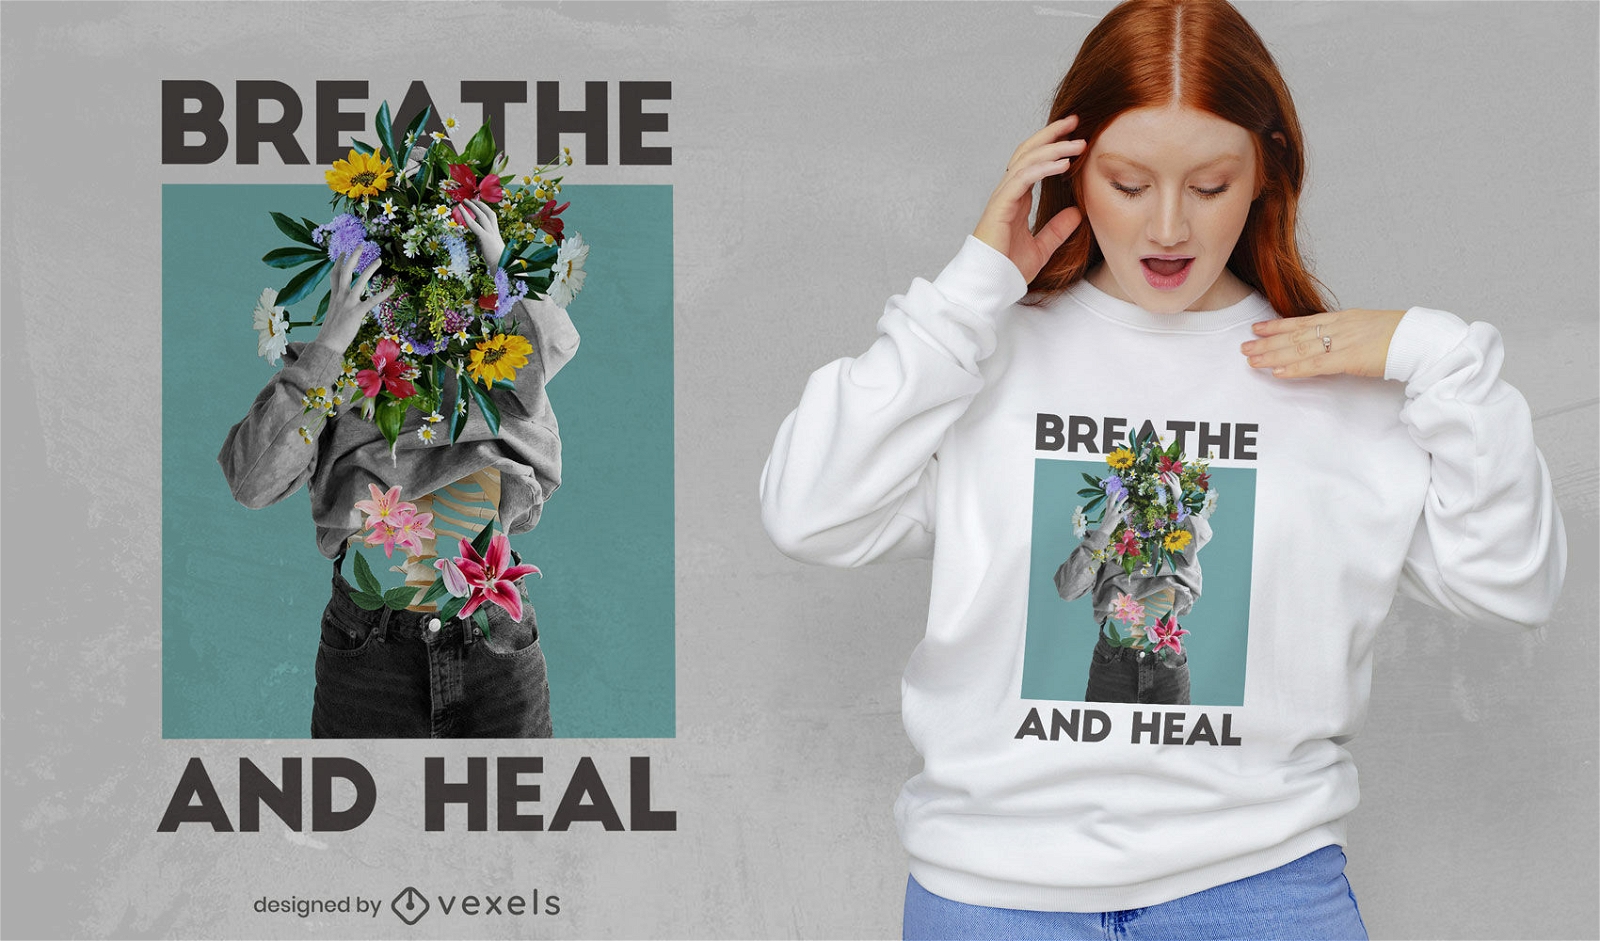 Respire e cure com design floral psd feminino de camiseta